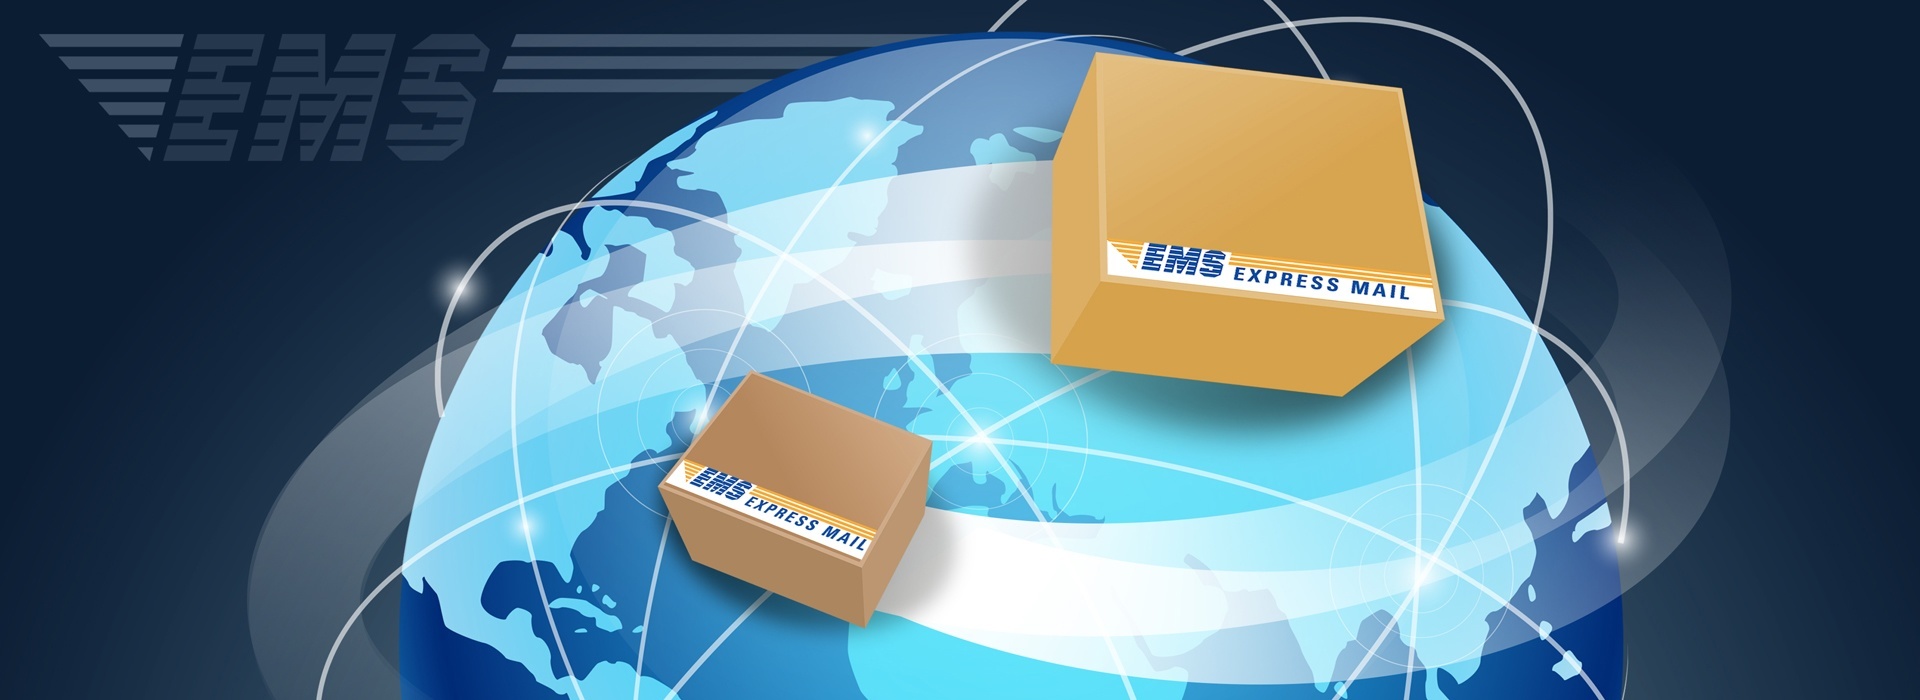 Magyar Posta Ltd. - International EMS express mail